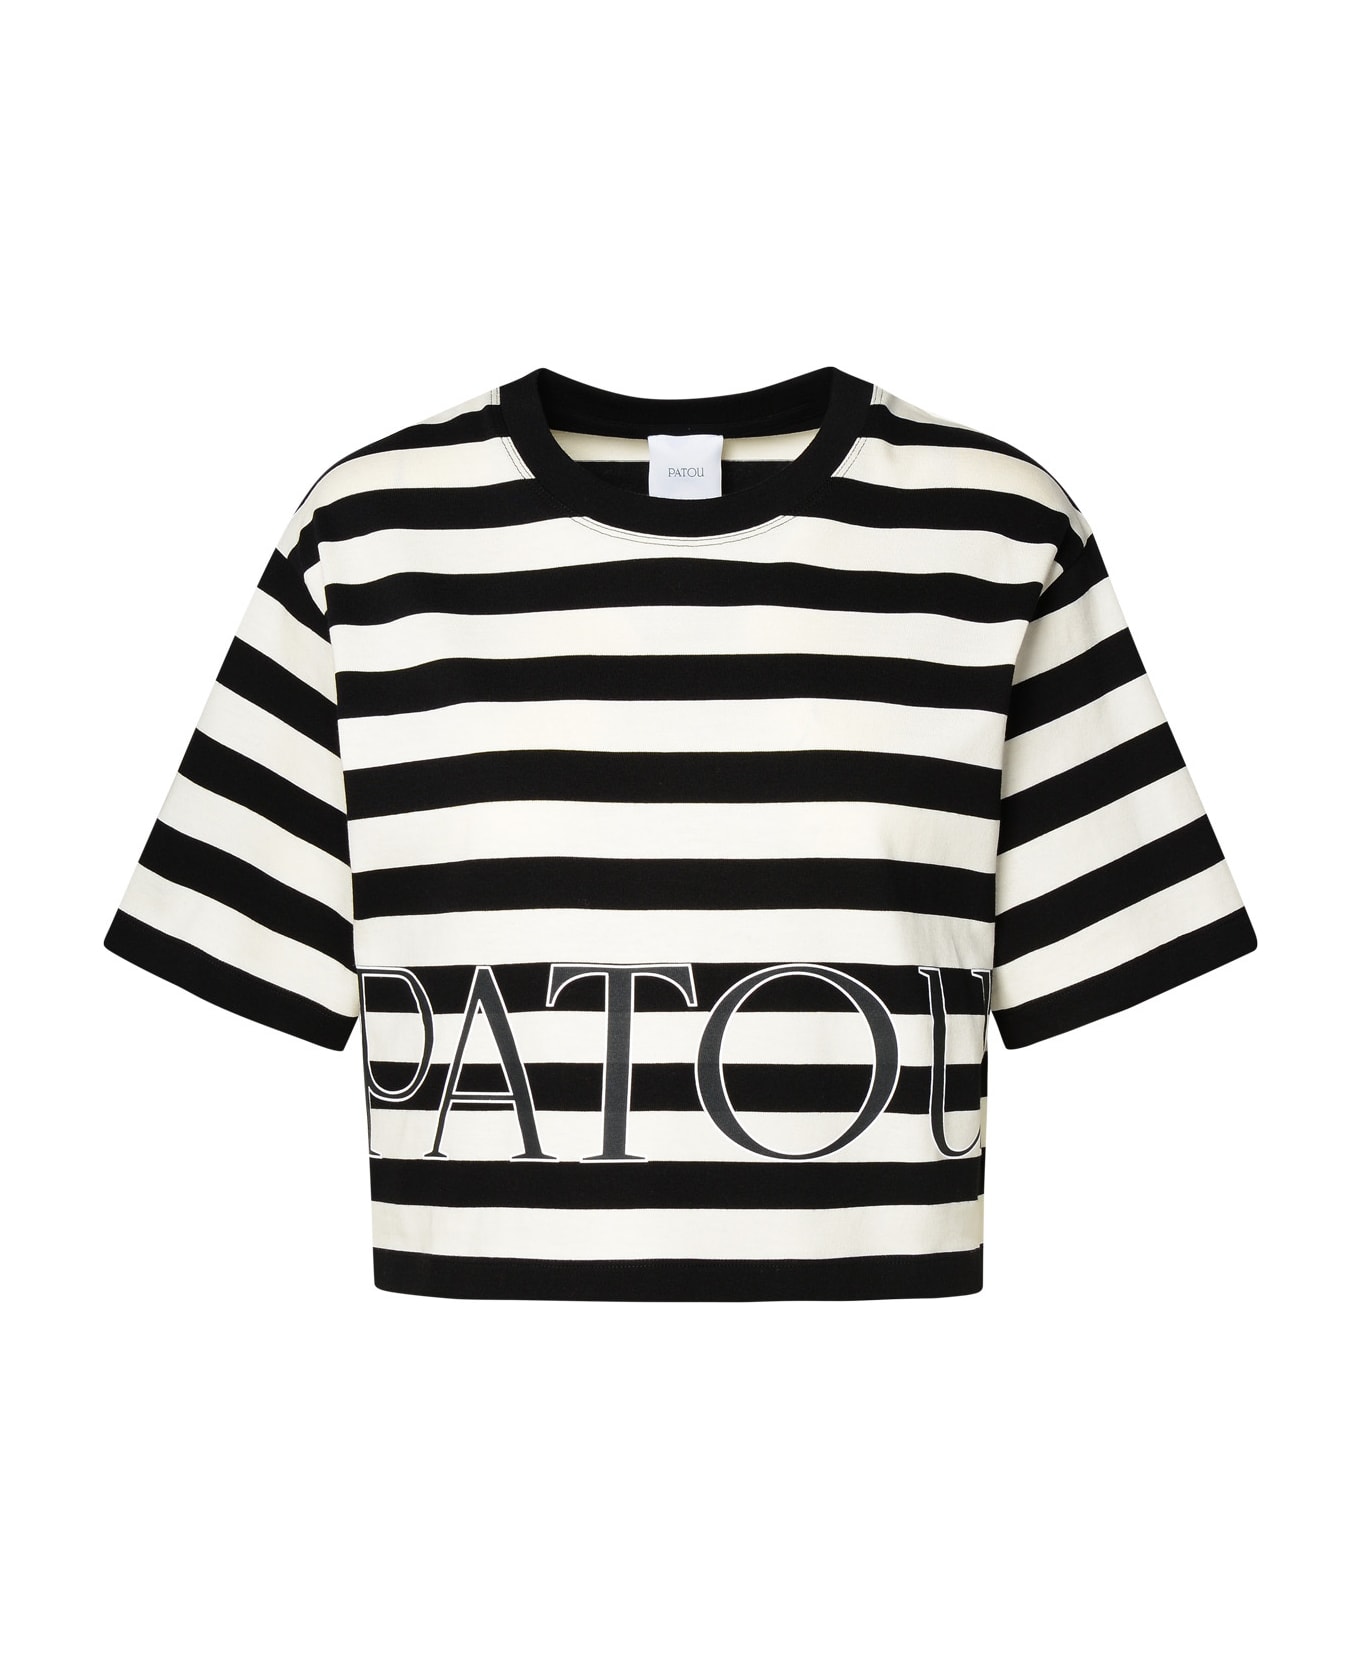 Patou Two-tone Cotton T-shirt - Nero/grigio